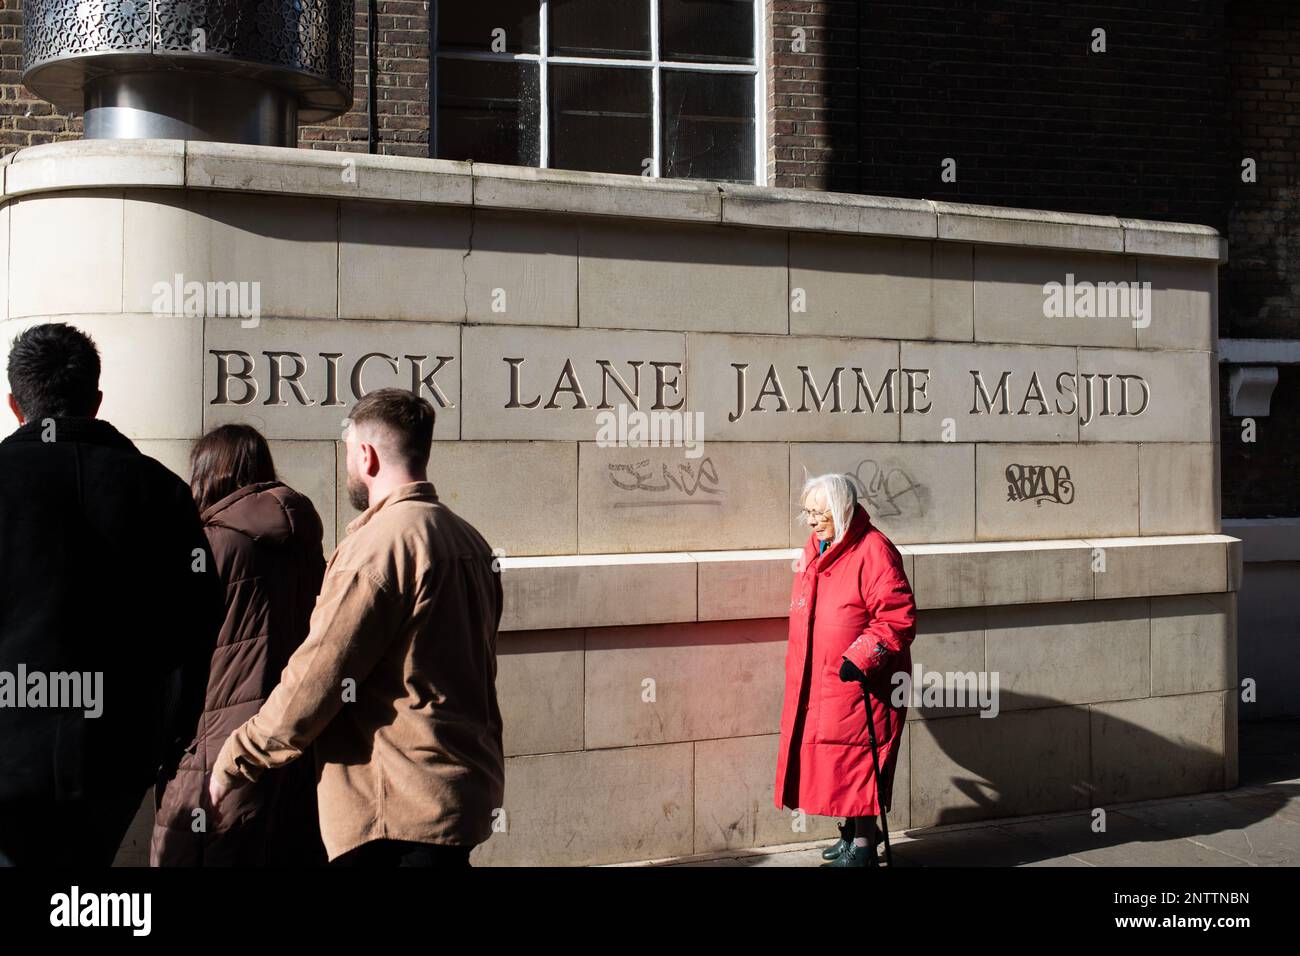 Les gens qui marchent devant une inscription à la mosquée de Brick Lane Jamme Masjid sur Brick Lane, à l'est de Londres. Ombres à contraste élevé. Banque D'Images